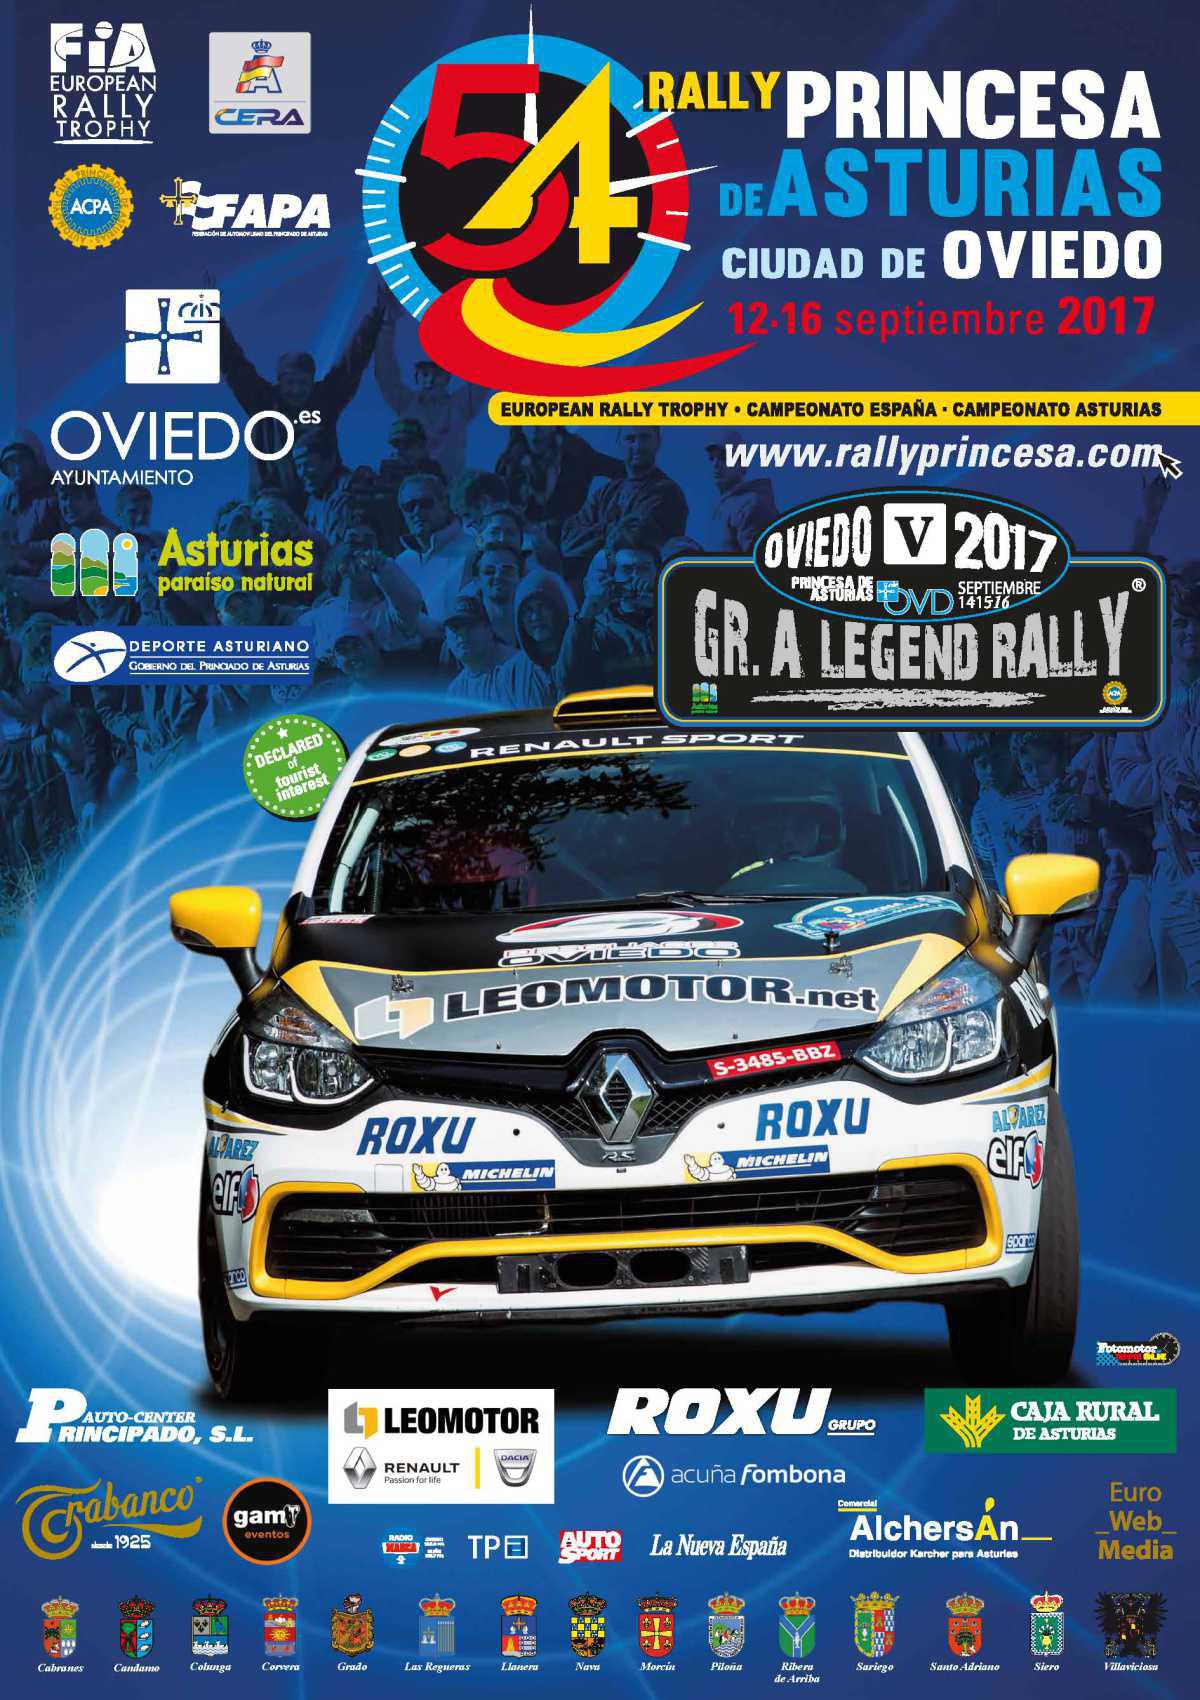 Cartel Oficial del 54 Rally Princesa de Asturias Ciudad de Oviedo